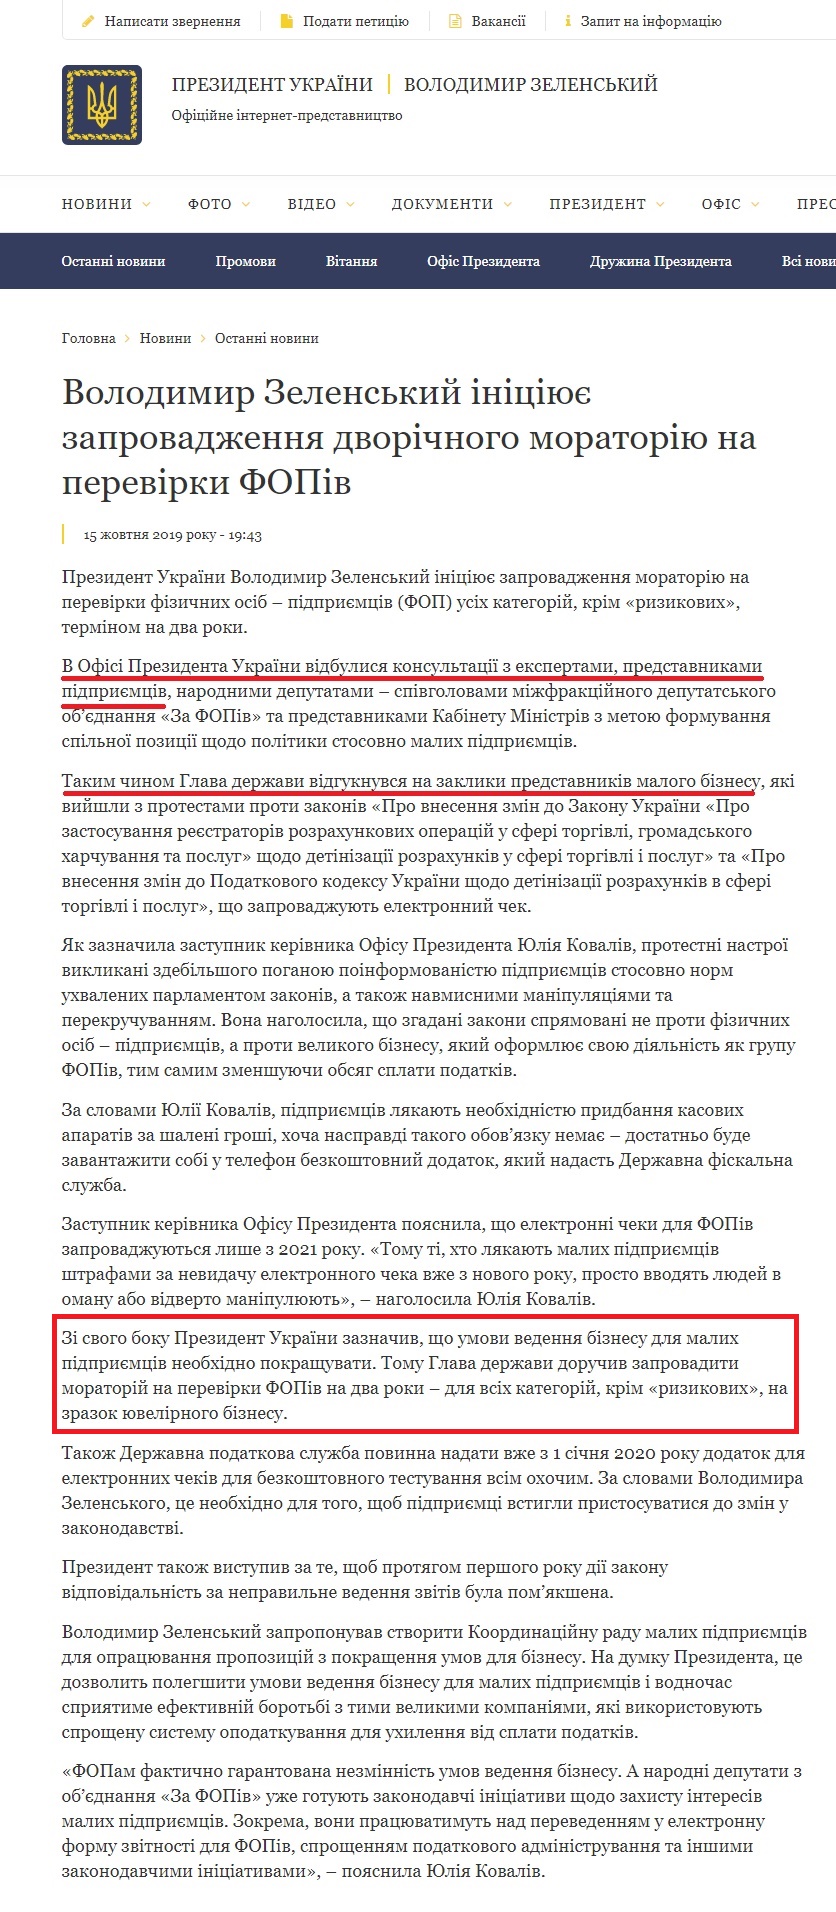 https://www.president.gov.ua/news/volodimir-zelenskij-iniciyuye-zaprovadzhennya-dvorichnogo-mo-57817